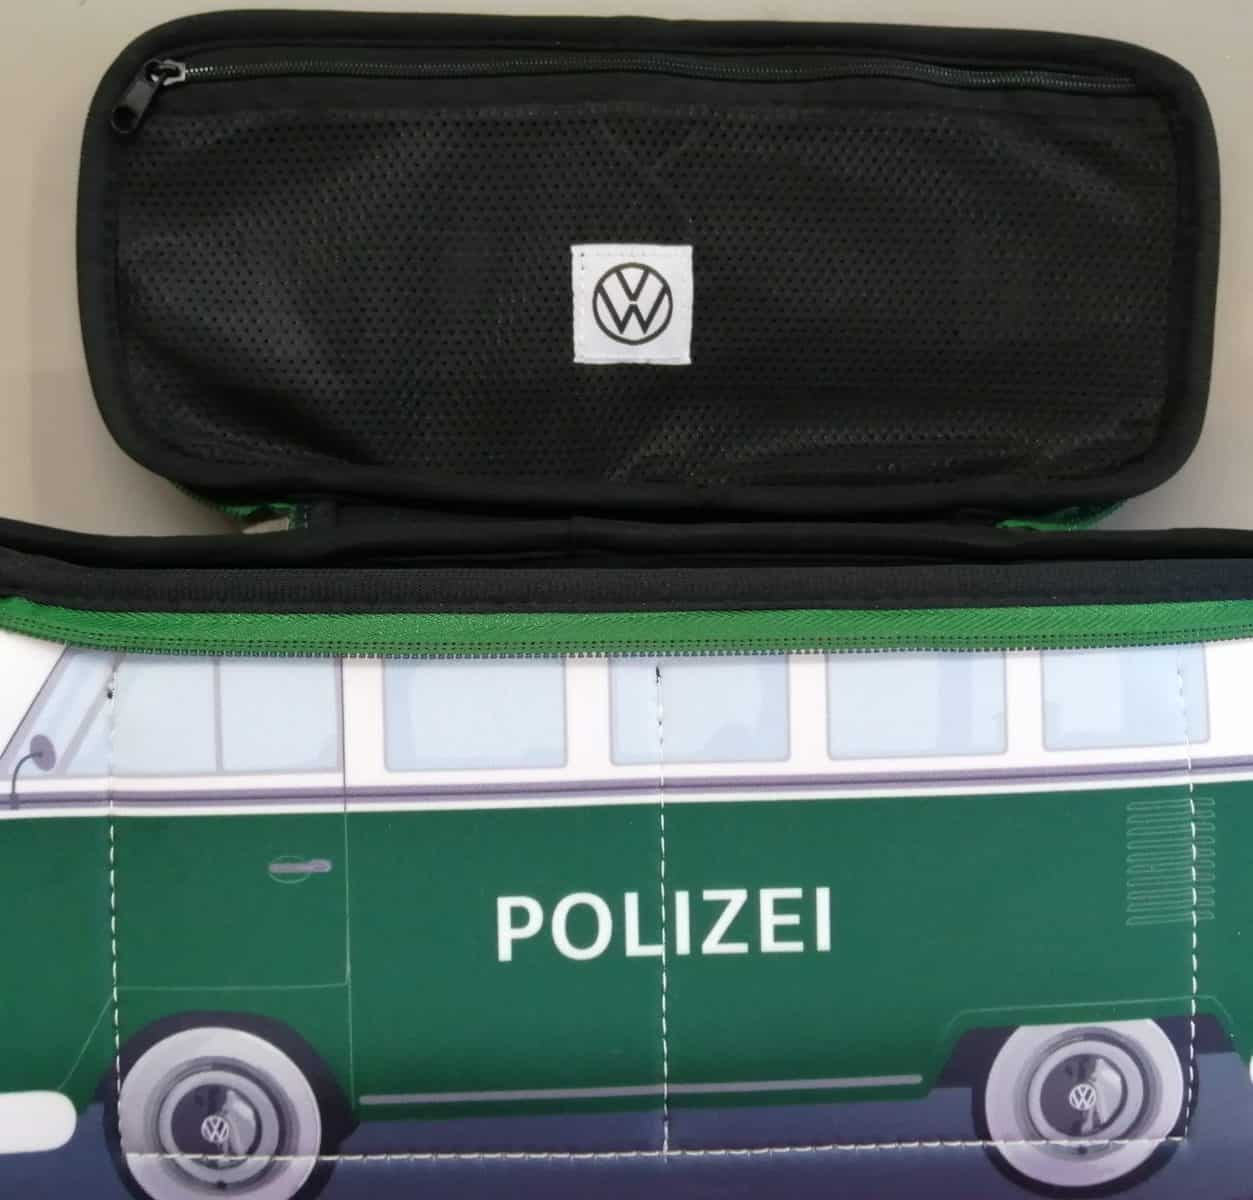 VW Kulturtasche Grün T1 Polizeiwagen 1H1087317 